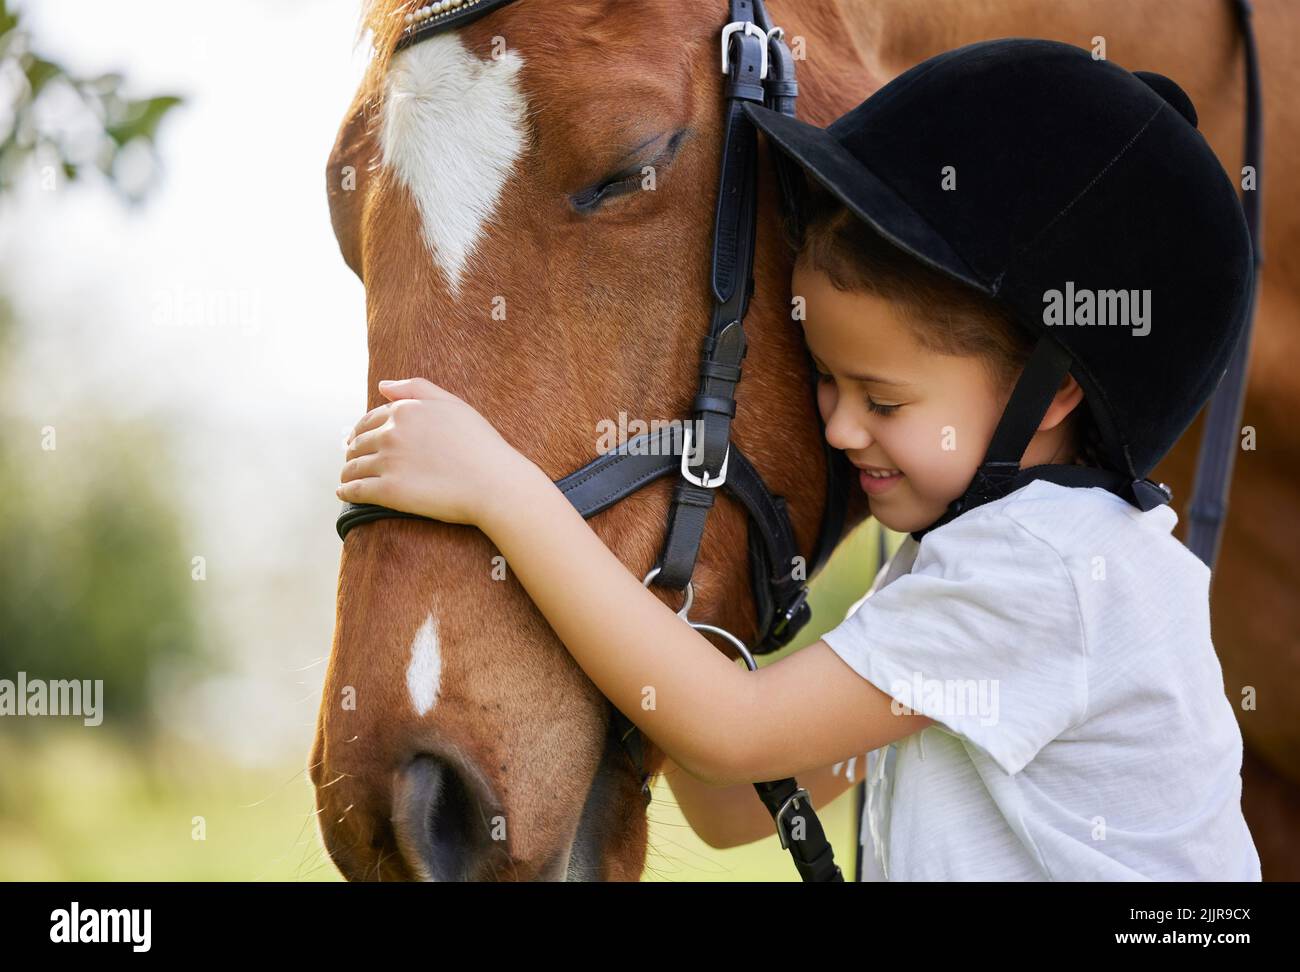 Vous avez gagné un ami pour la vie. Une petite fille embrassant un cheval dehors. Banque D'Images